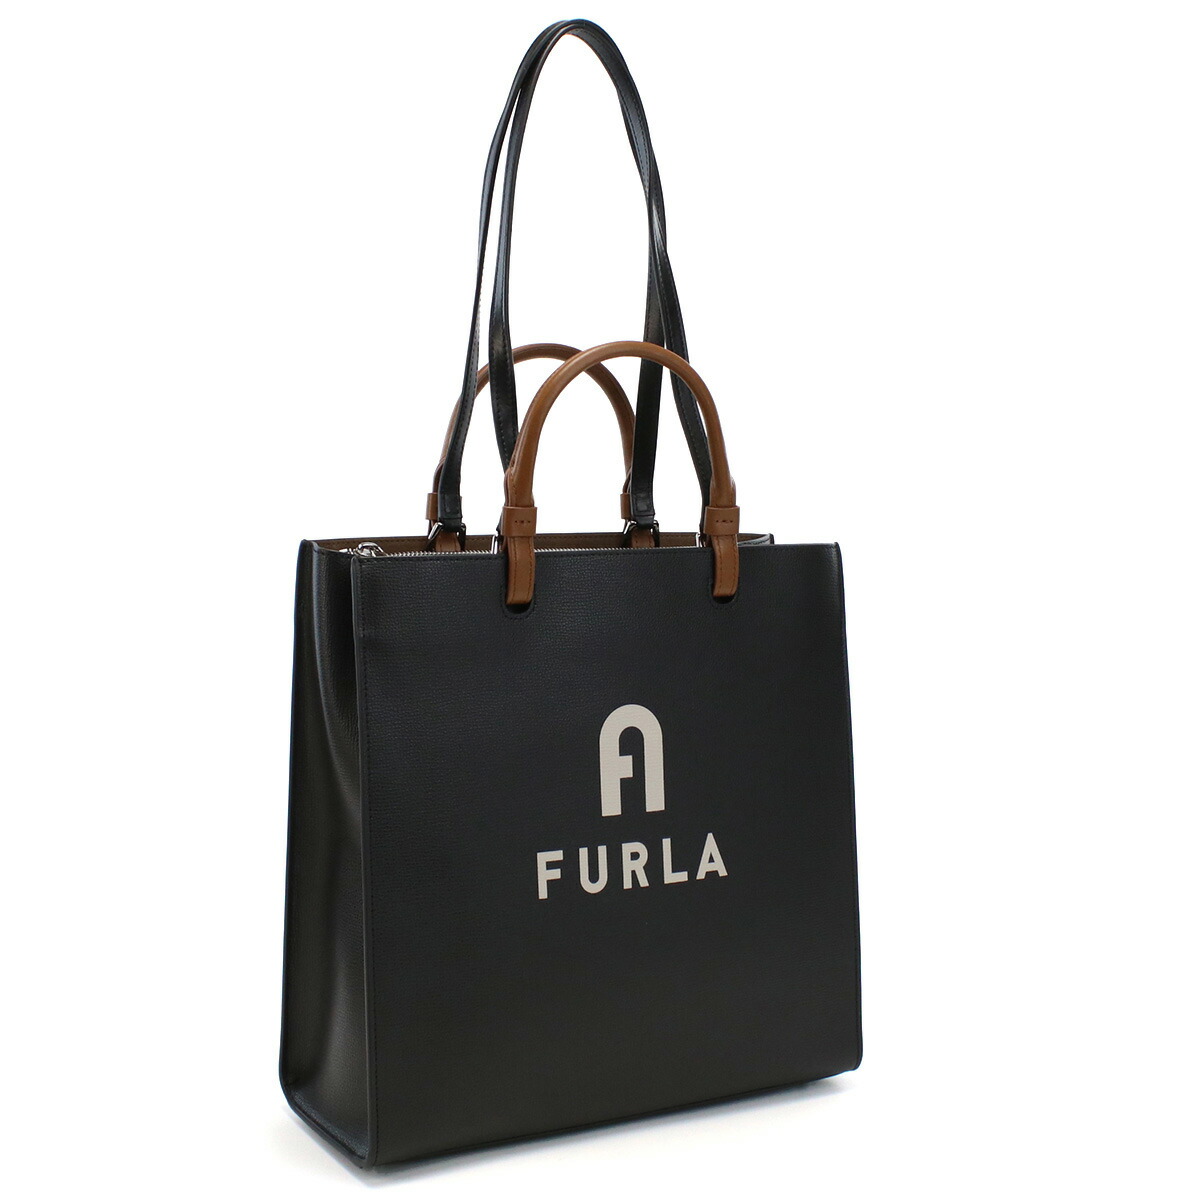 フルラ FURLA FURLA VARSITY トートバッグ ブランド WB00728 BX1230 E0500 NERO+PERLA ブラック bag-01 bk-friday gif-03w SS2312